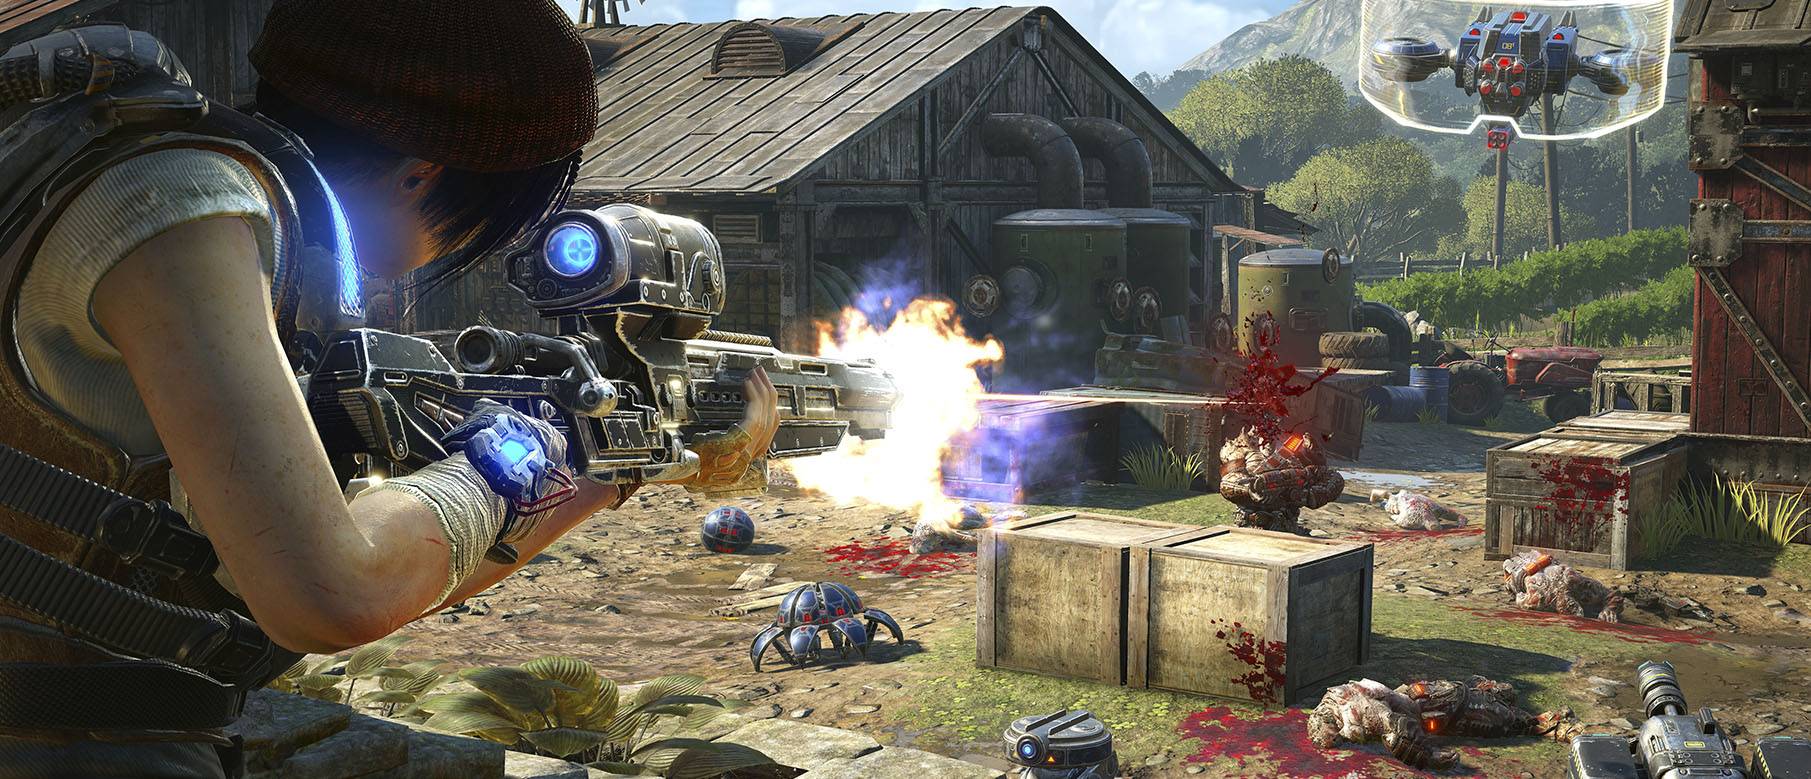 Изображение к 24 минуты геймплея Gears of War 4 в режиме Орда